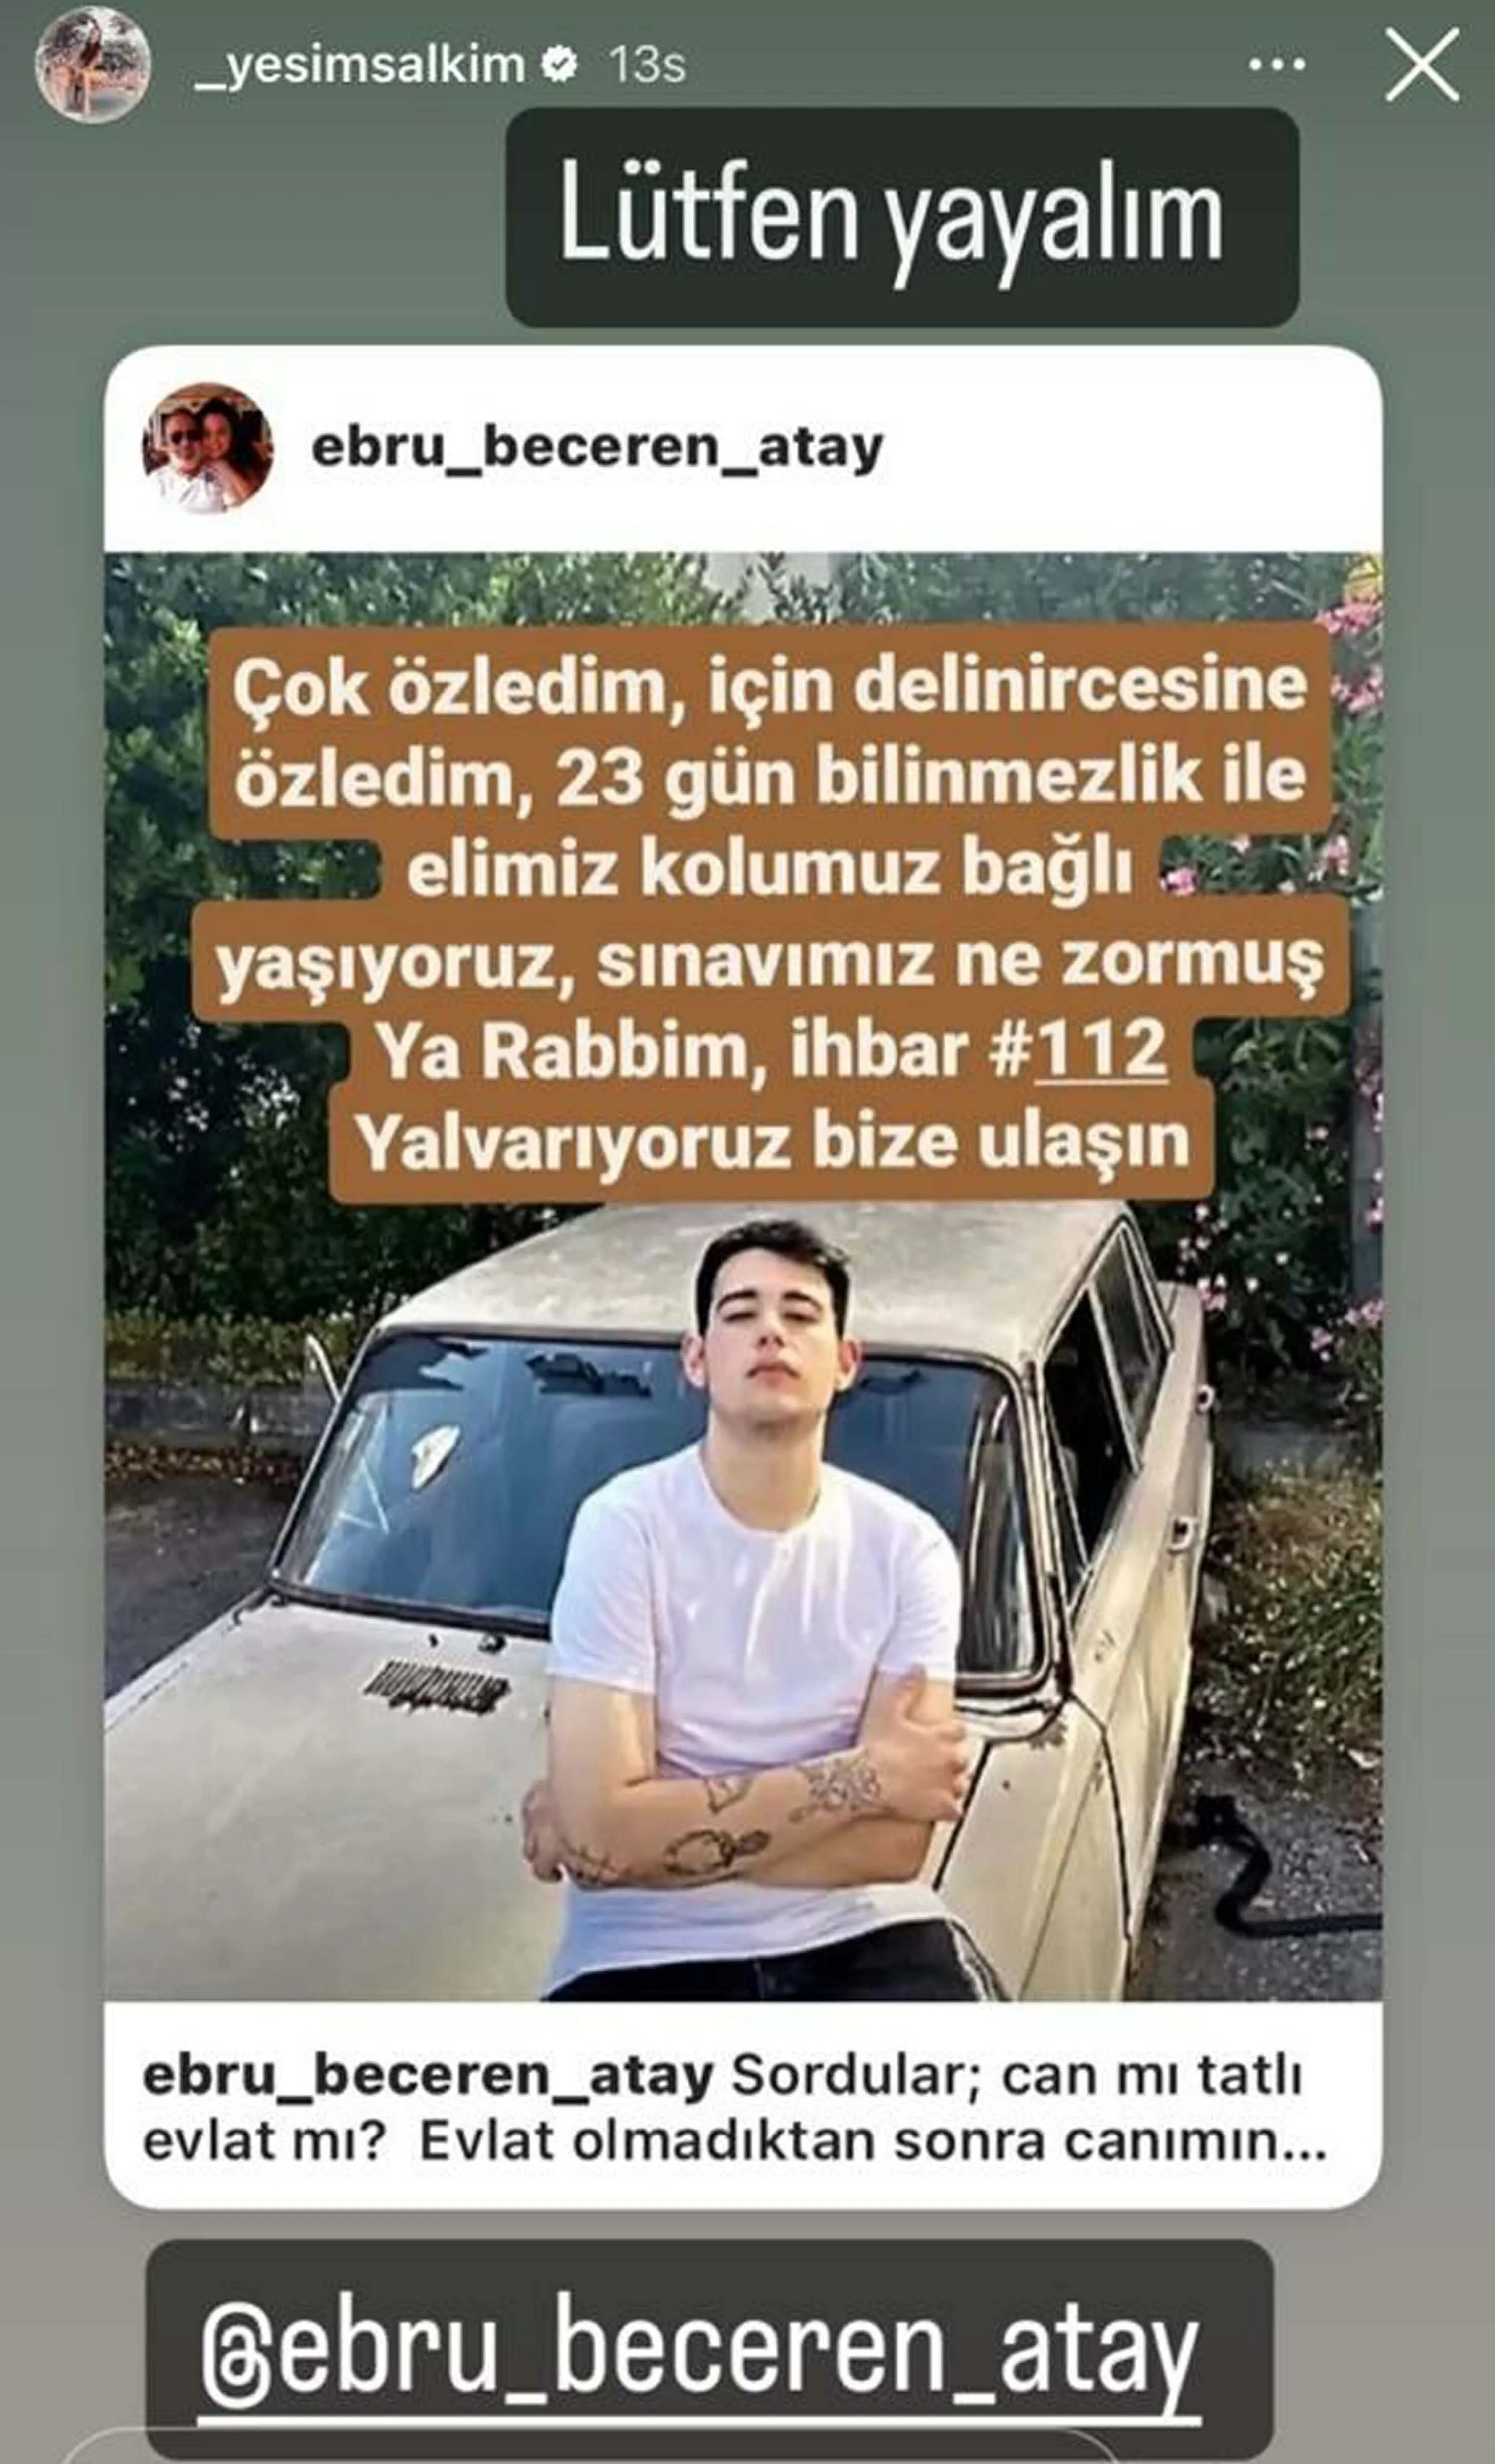 İzmir'de, 15 Temmuz'da arkadaşlarıyla Çeşme'ye giden ve bir daha da haber alınamayan Veli Eren Atay’ın (19) bulunması için sanat dünyasından birçok isim sosyal medya hesaplarından paylaşımda bulundu